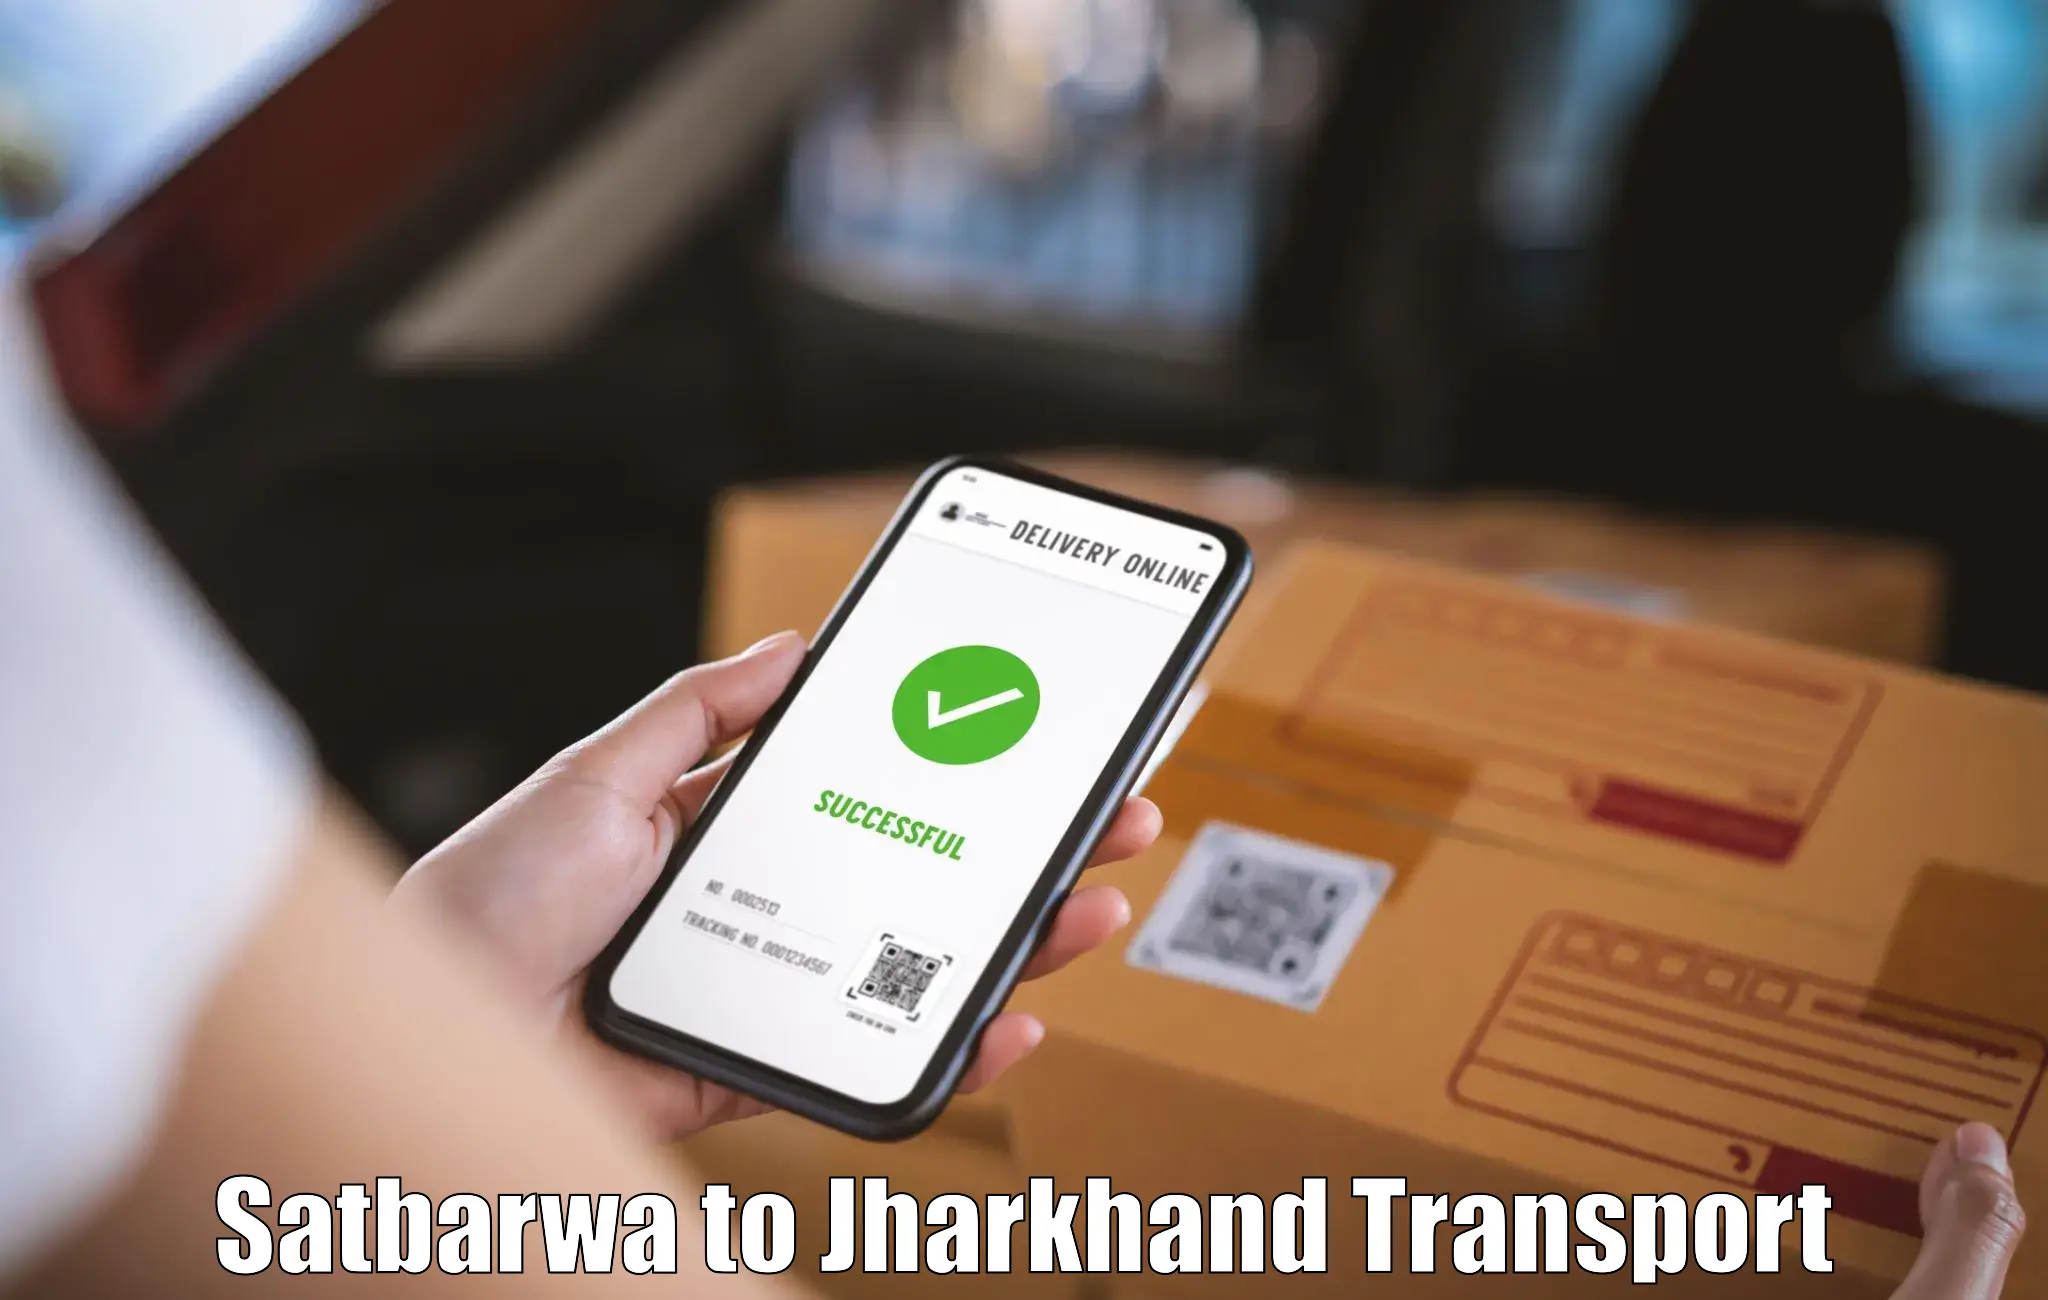 Road transport online services Satbarwa to Garhwa